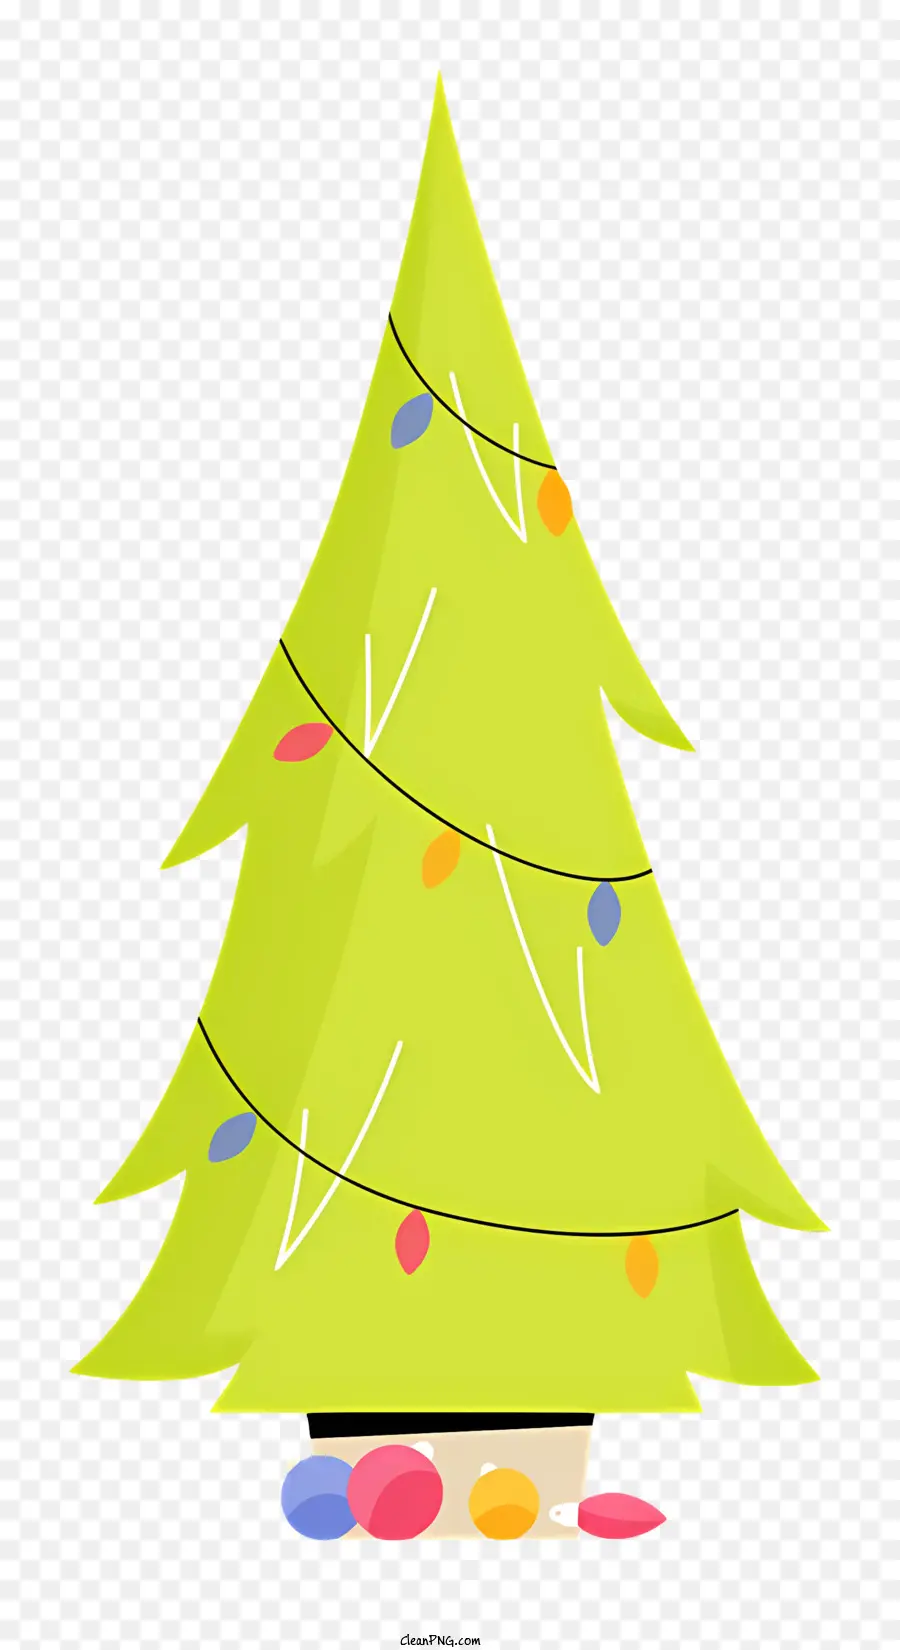 Weihnachtsbaum - Zylindrischer Papier Weihnachtsbaum mit farbigen Lichtern